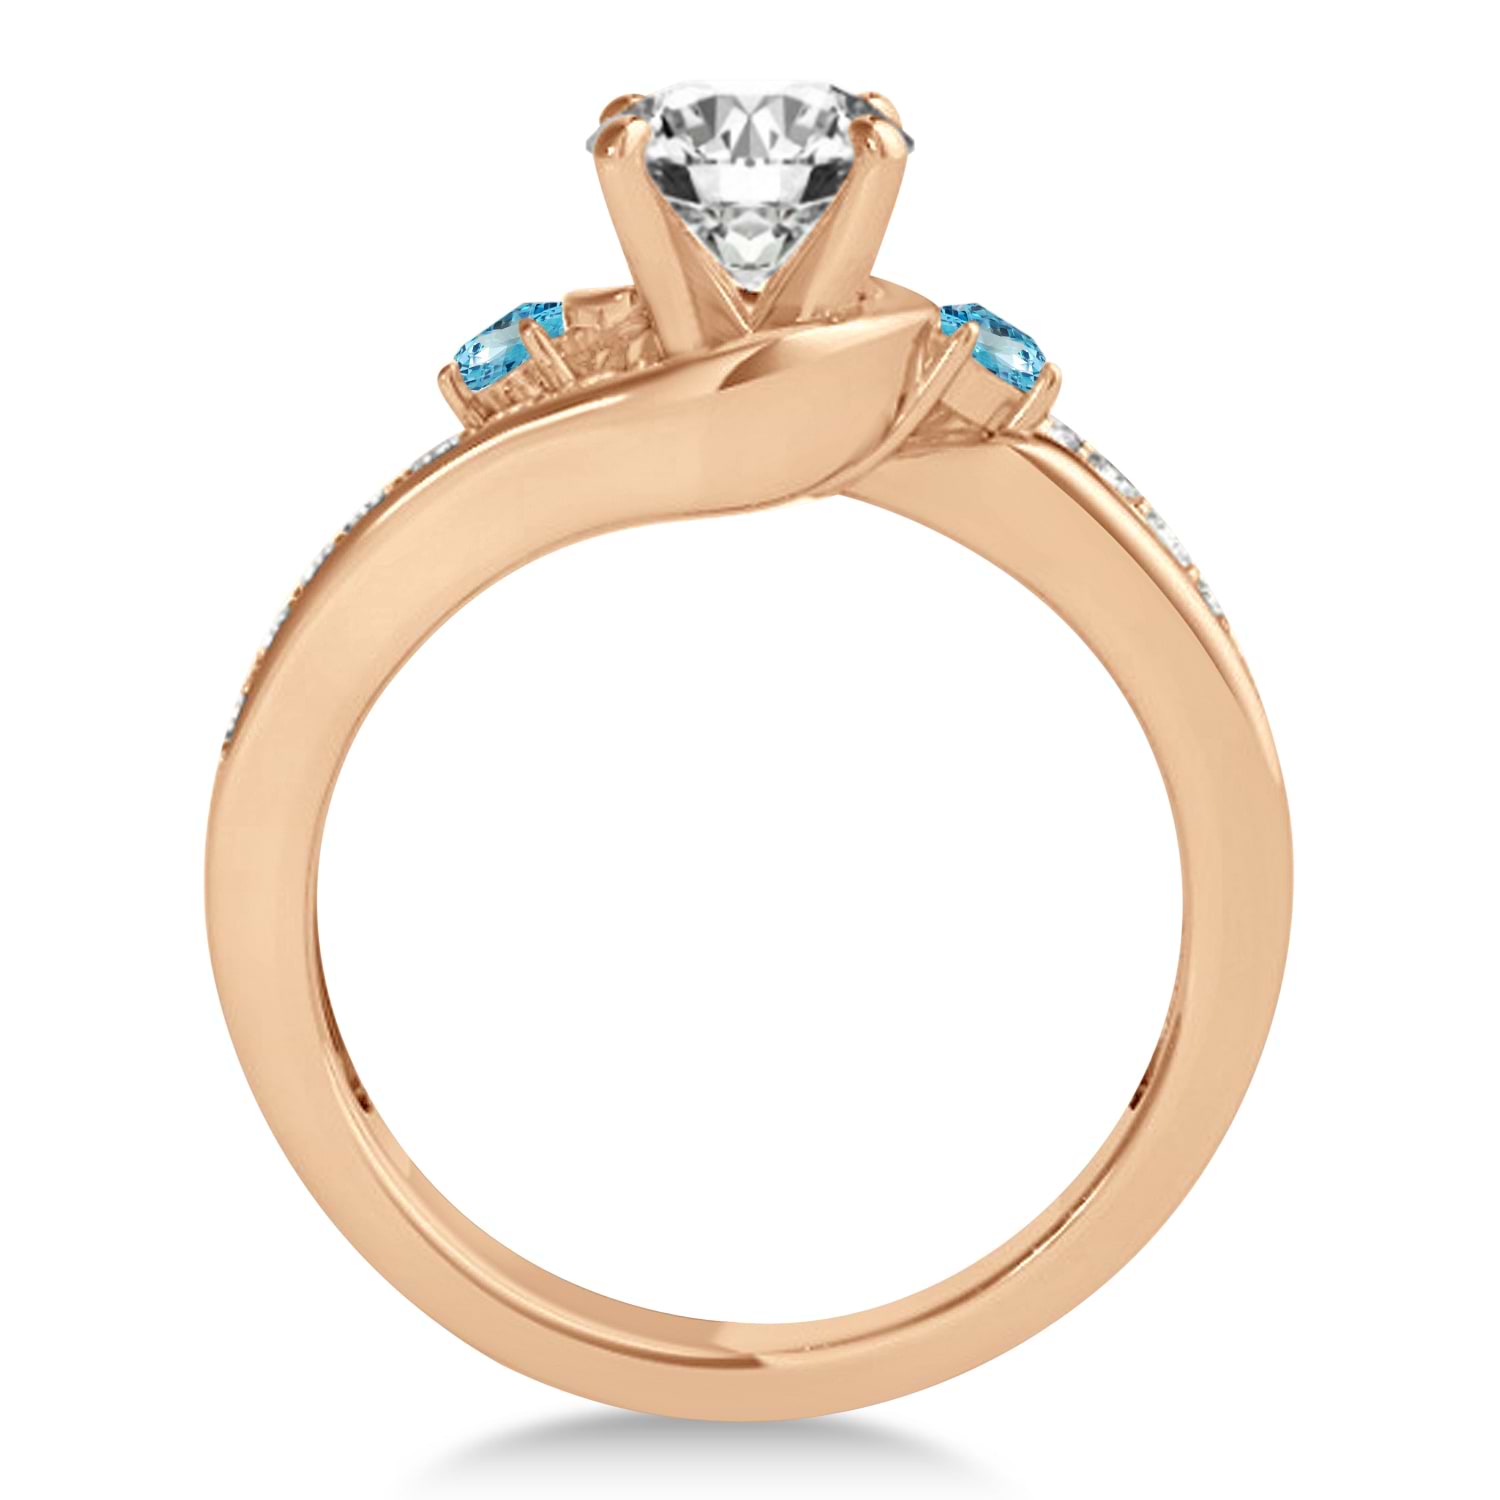 Swirl Design Blue Topaz & Diamond Engagement Ring Setting 18k Rose Gold 0.38ct